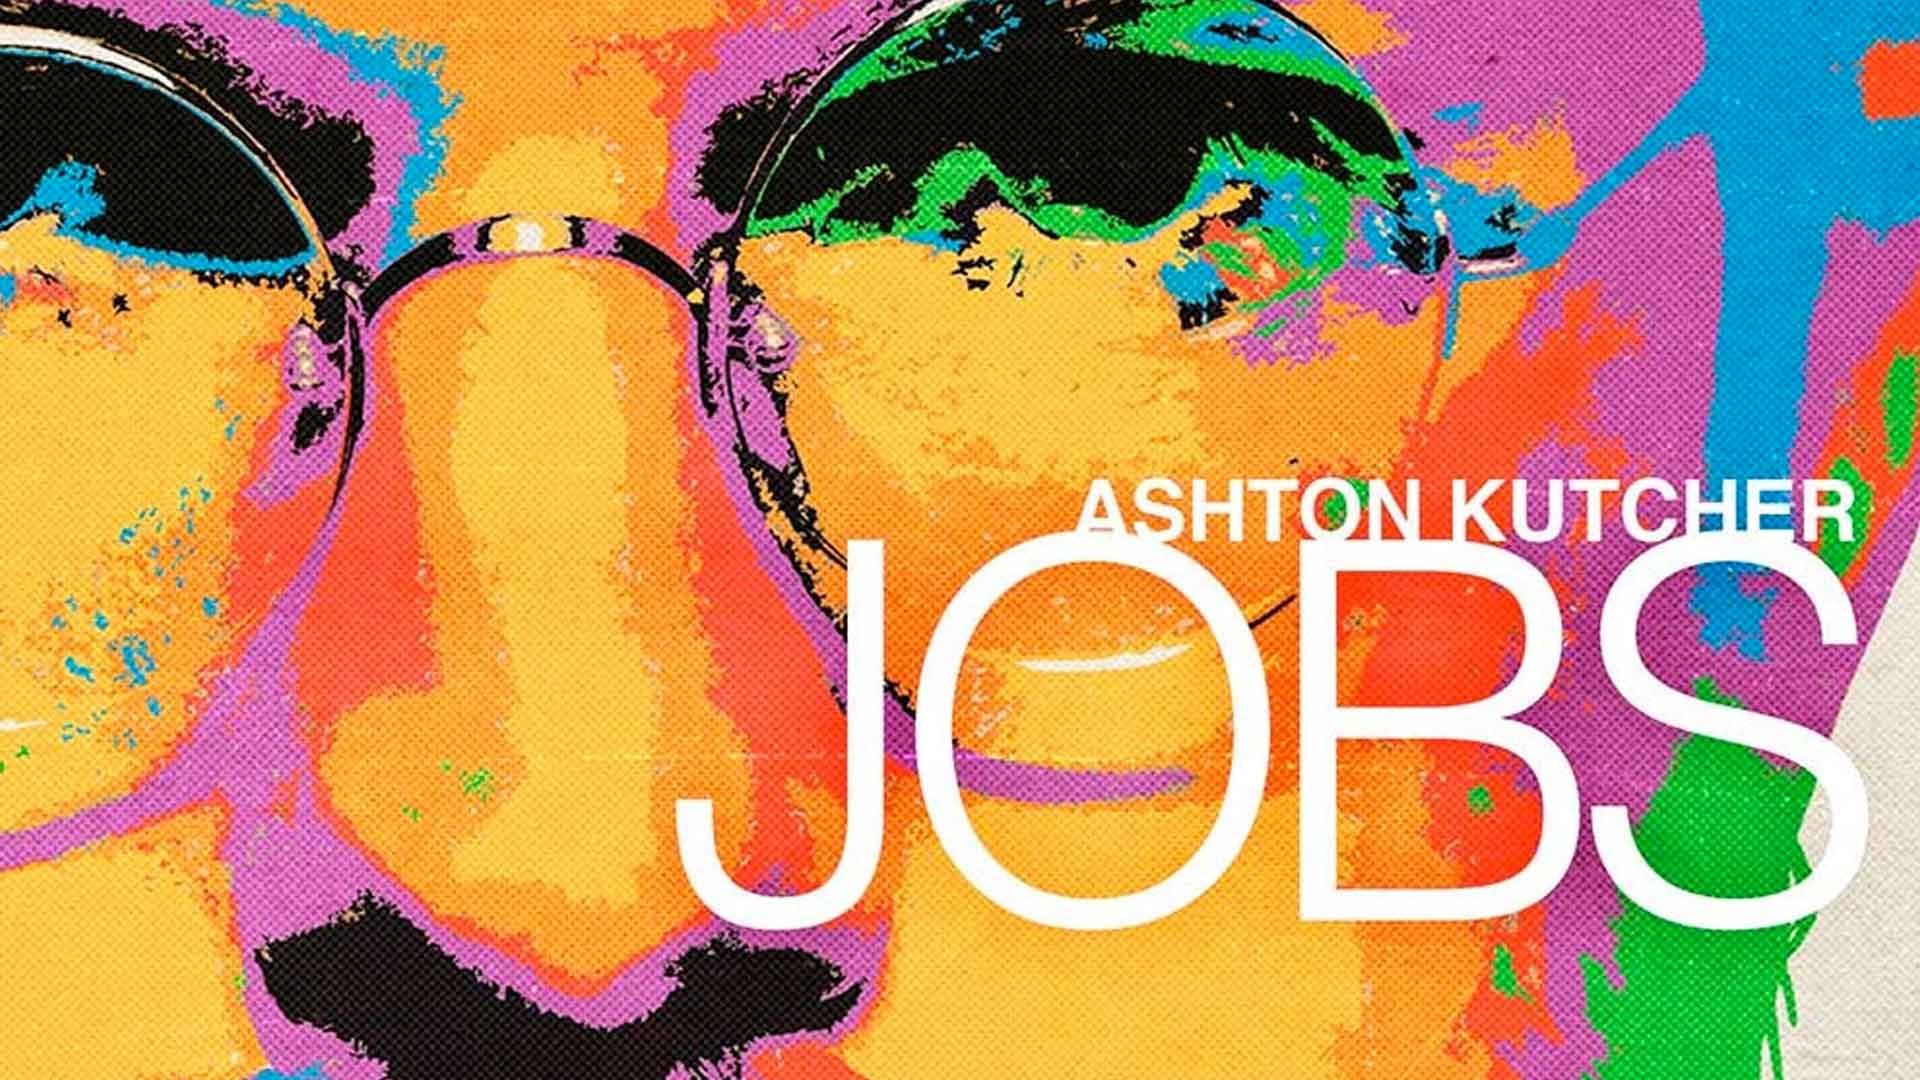 Photos of Ashton Kutcher Dressed Up As Steve Jobs For New jOBS Film